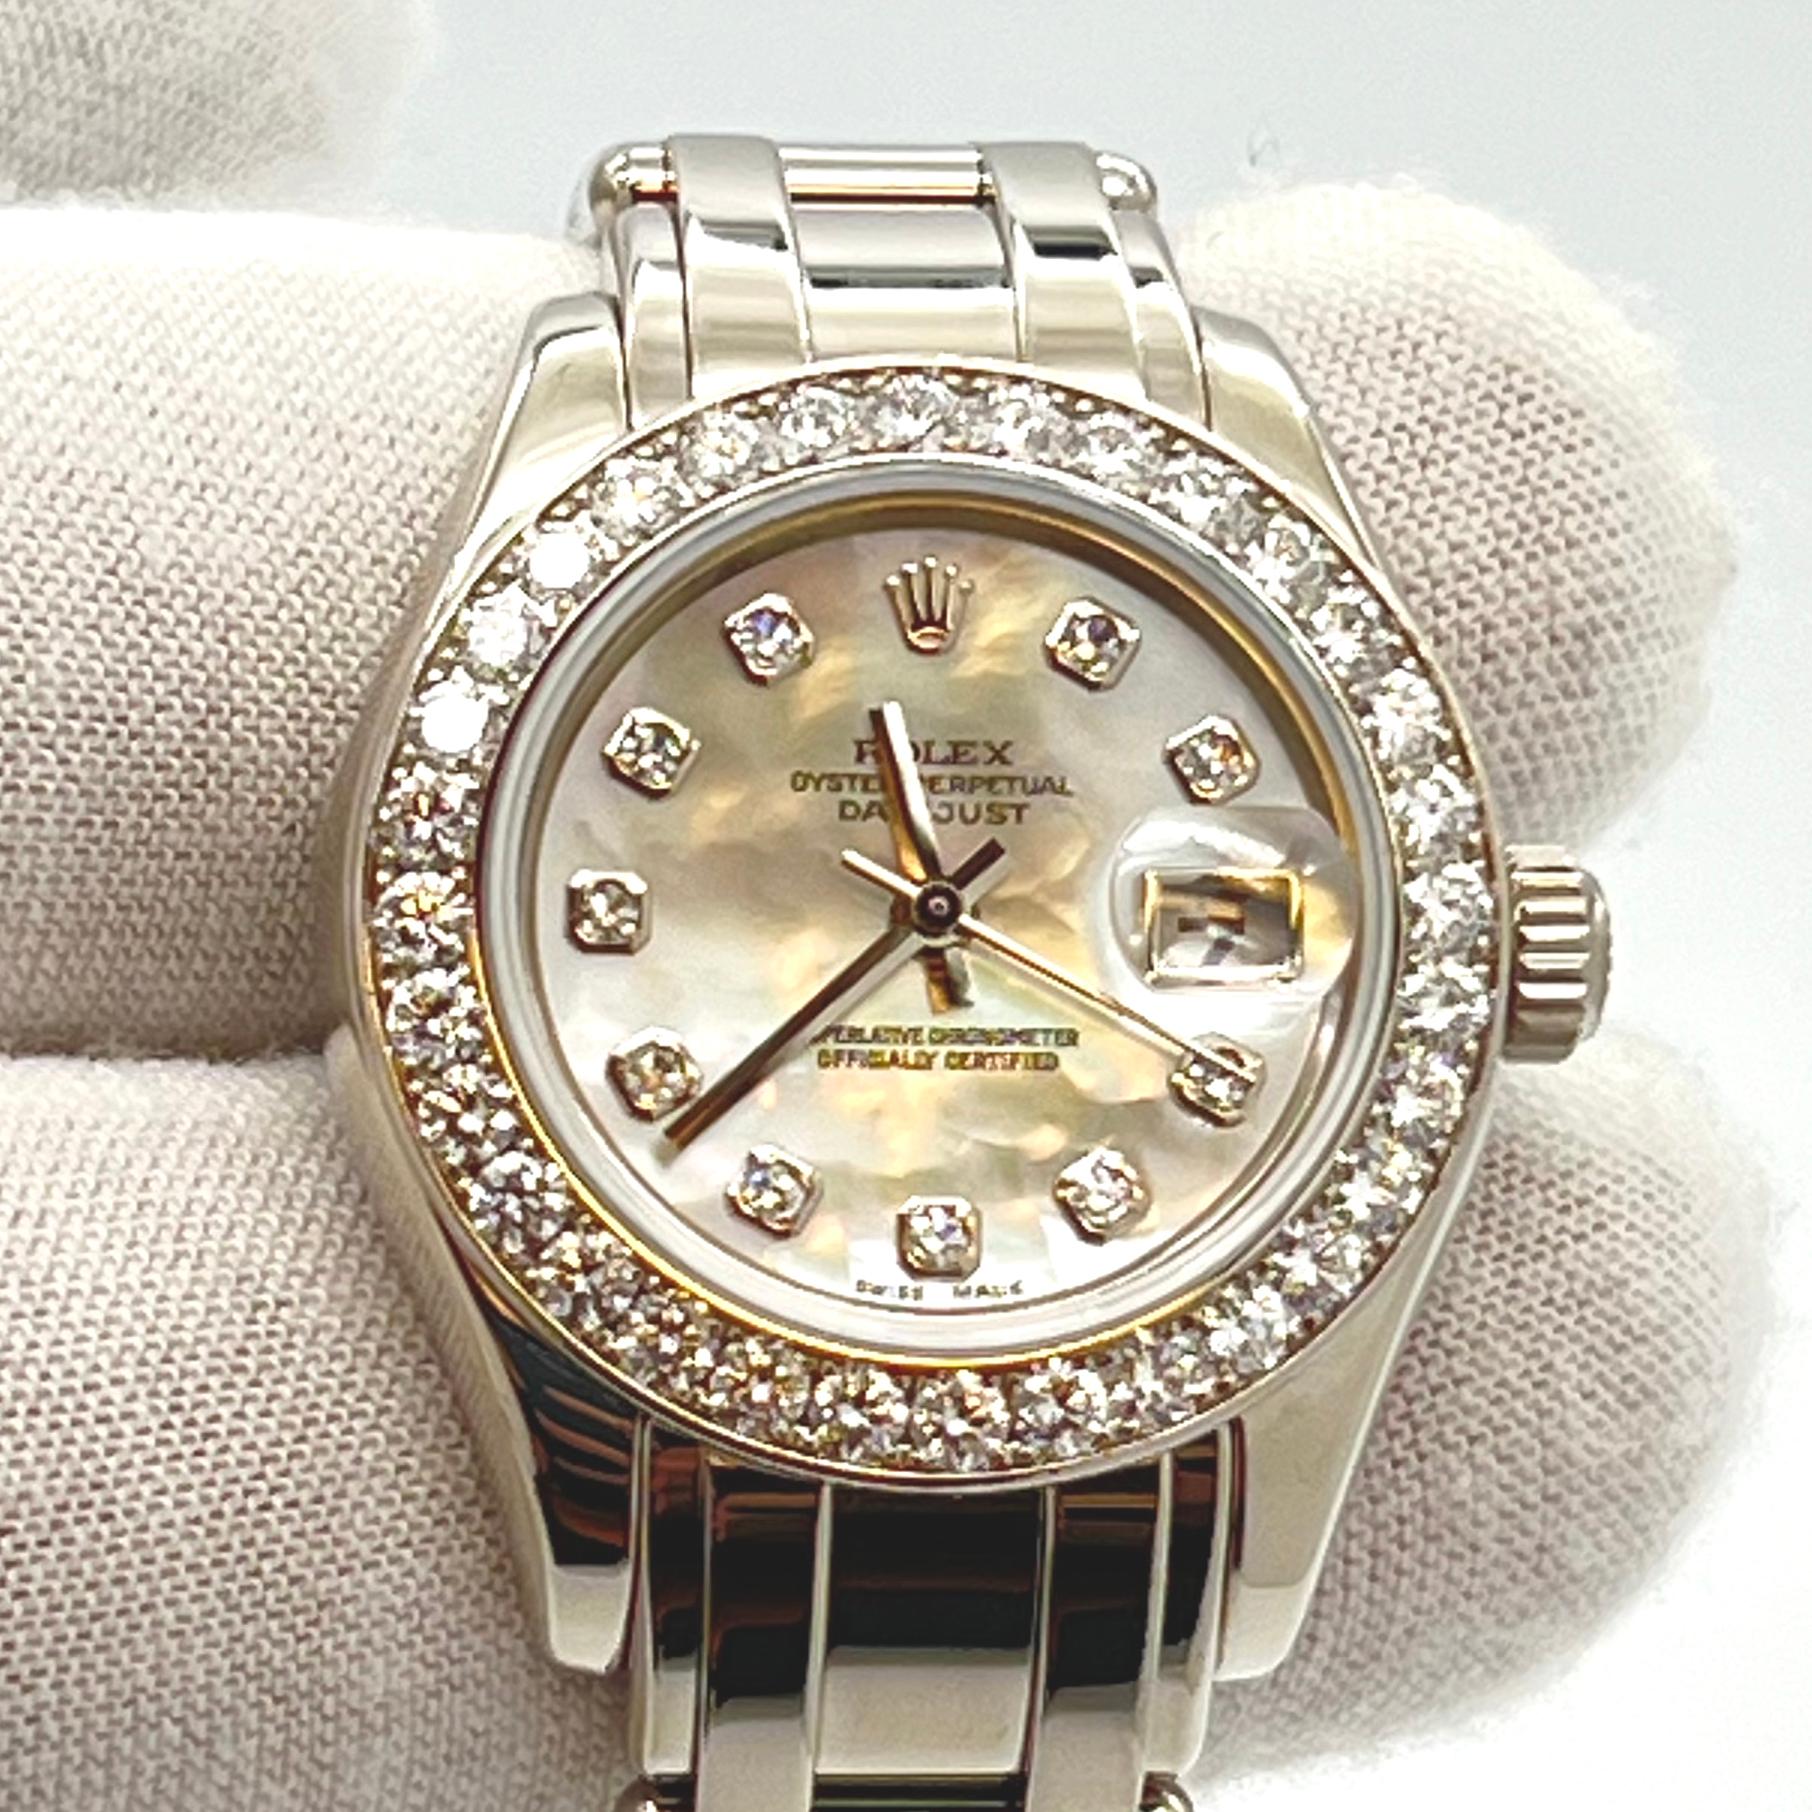 Die Rolex Lady-Datejust Pearlmaster, Referenznummer 80299, ist ein raffinierter Zeitmesser für Frauen, die sowohl Eleganz als auch Funktionalität suchen. Die aus Weißgold gefertigte Uhr ist in sehr gutem Zustand und ideal für alle, die handwerkliche